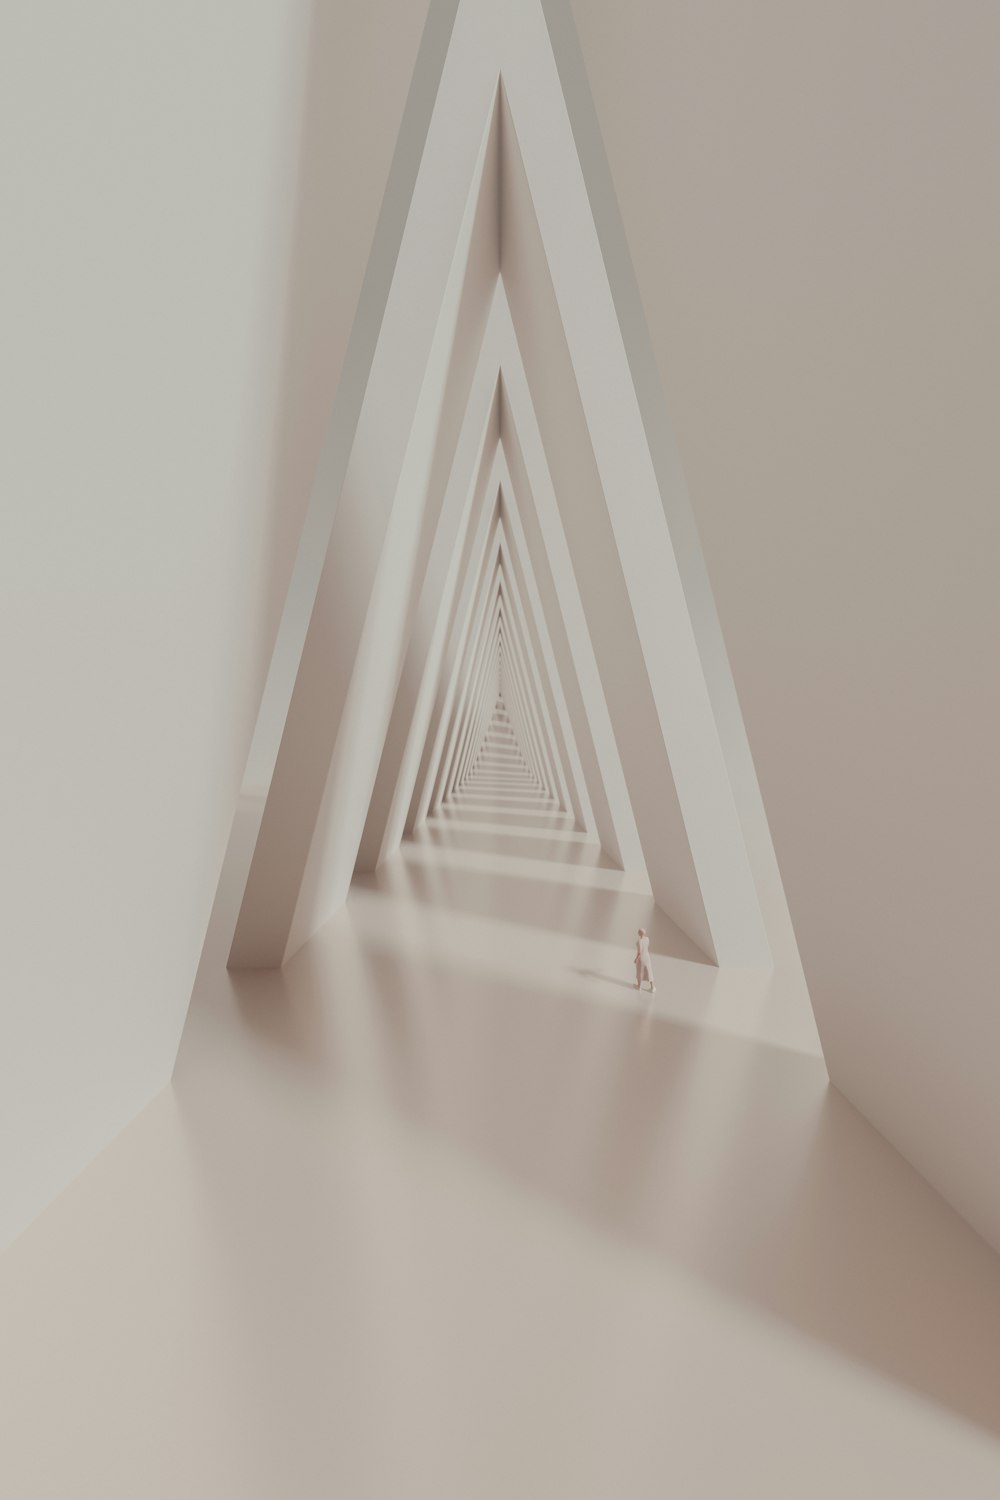 Una habitación blanca con una pared en forma de triángulo